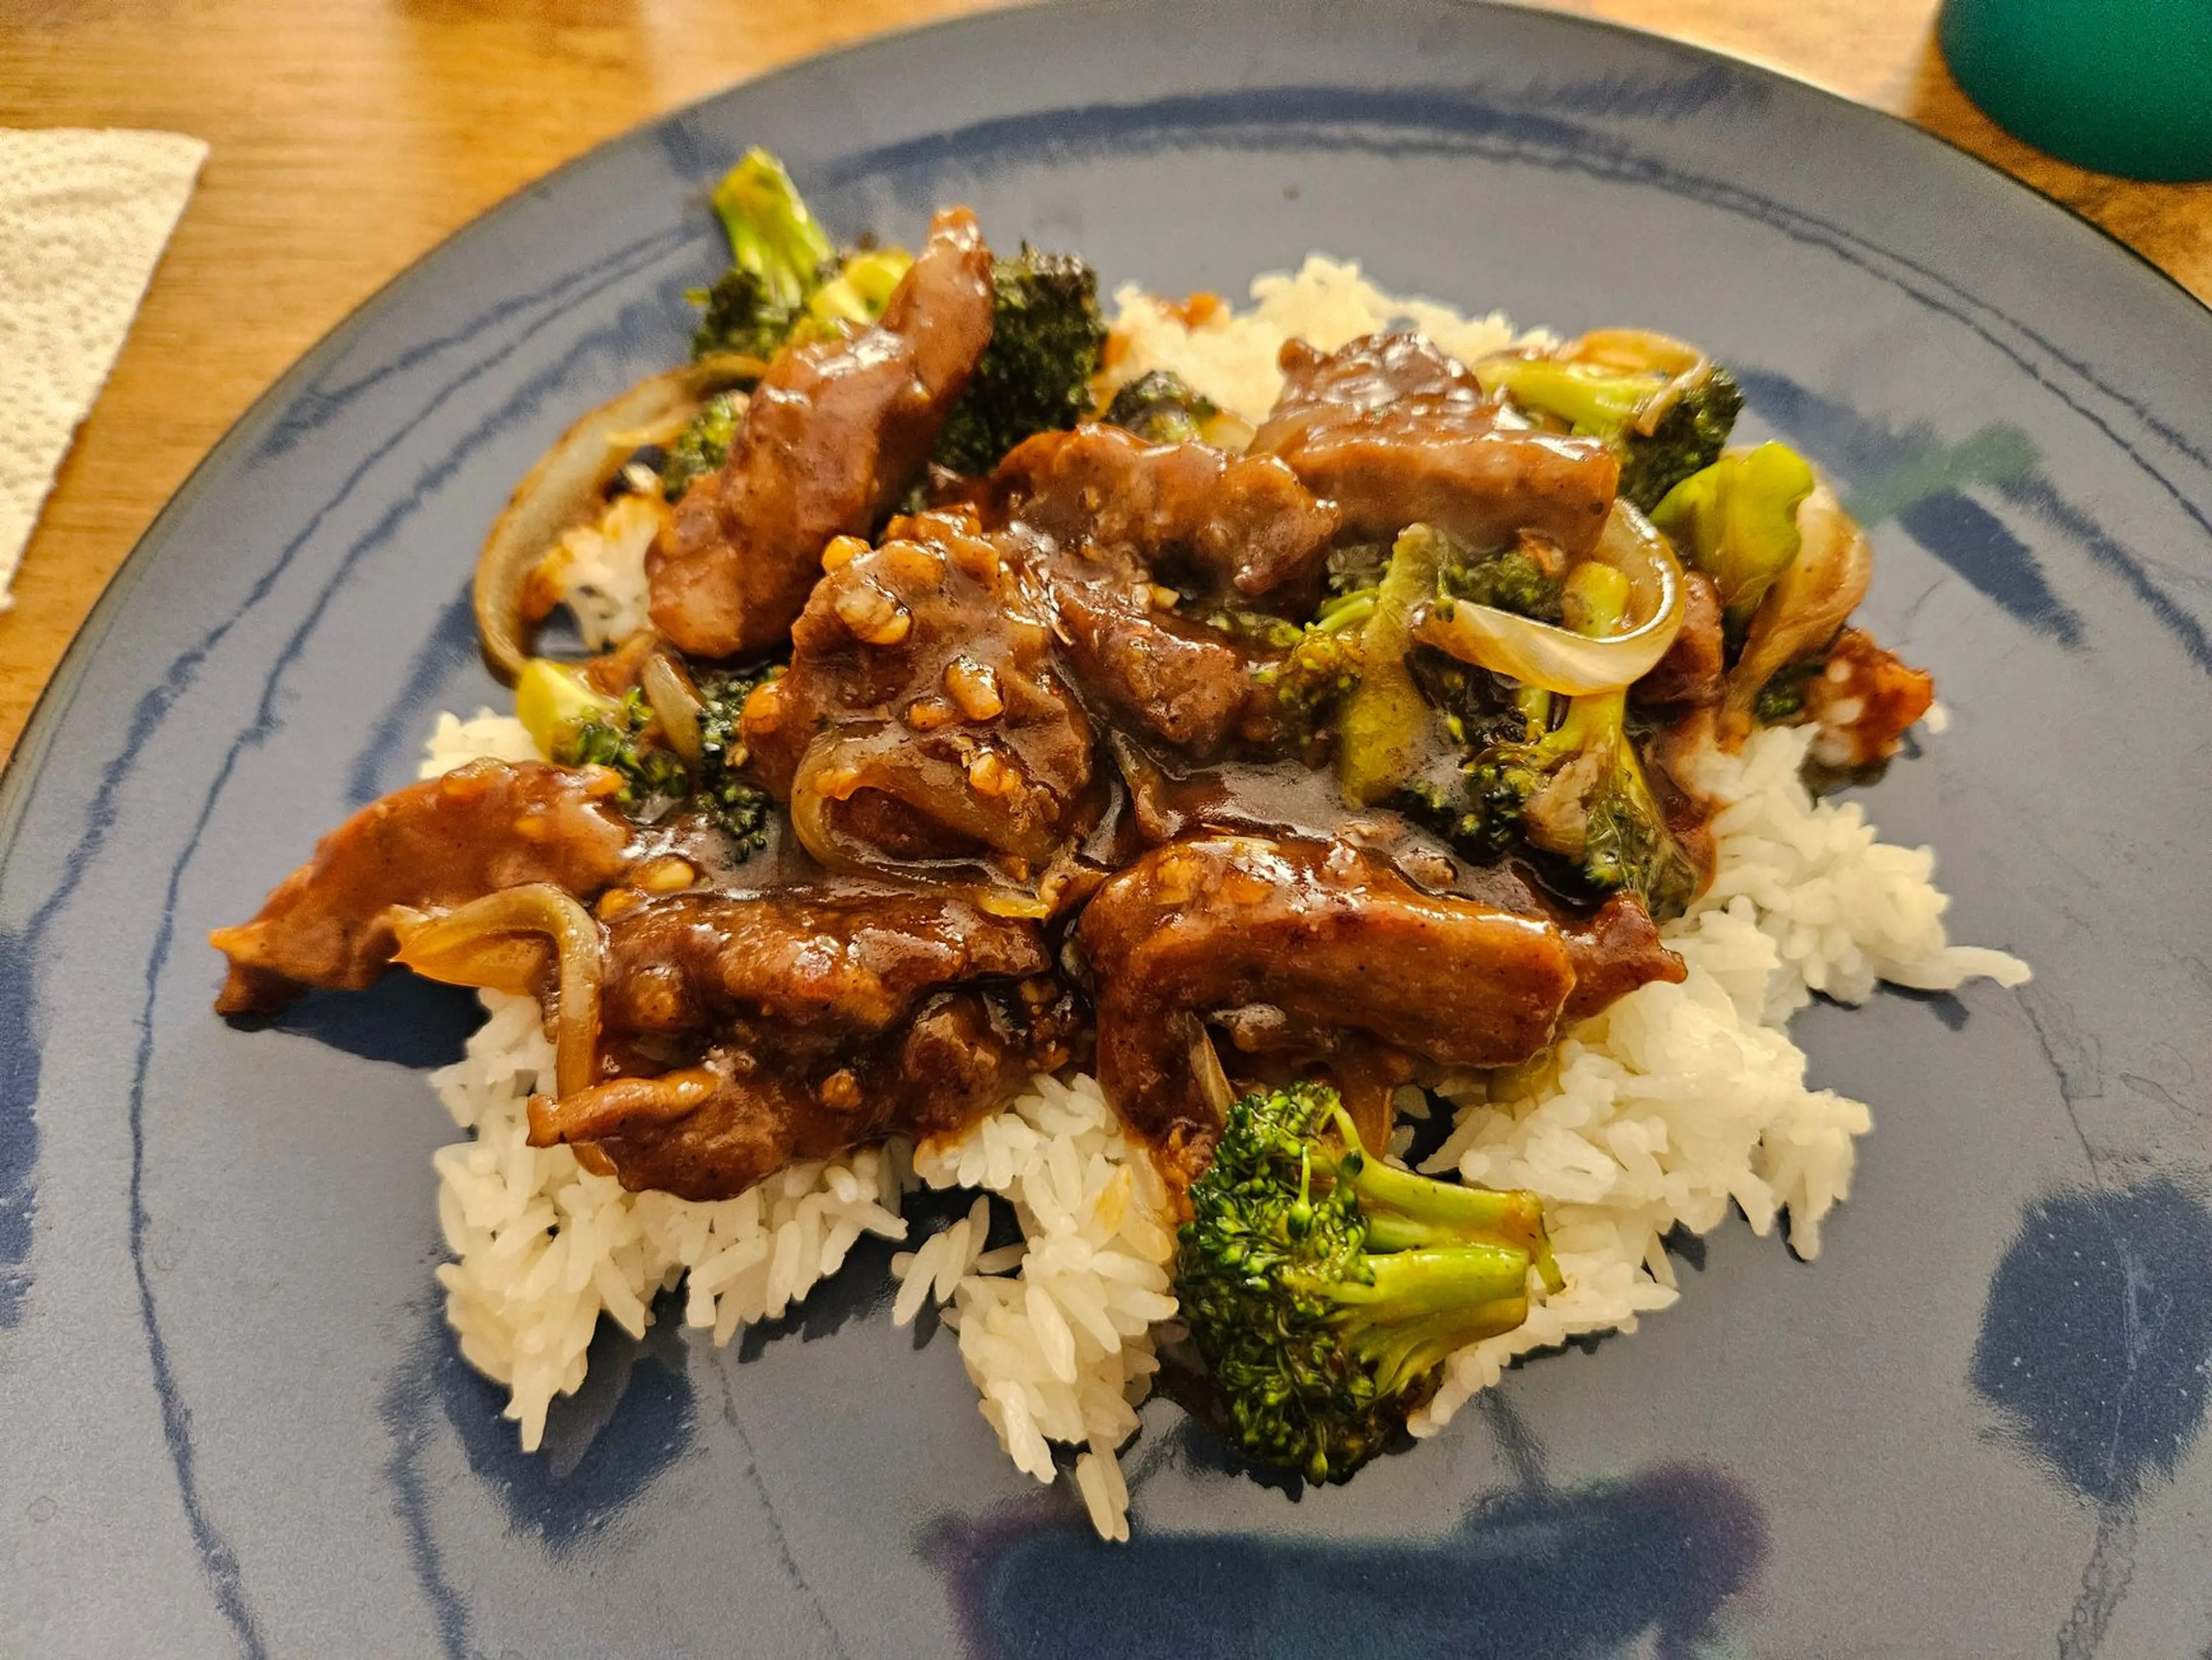 Broccoli beef